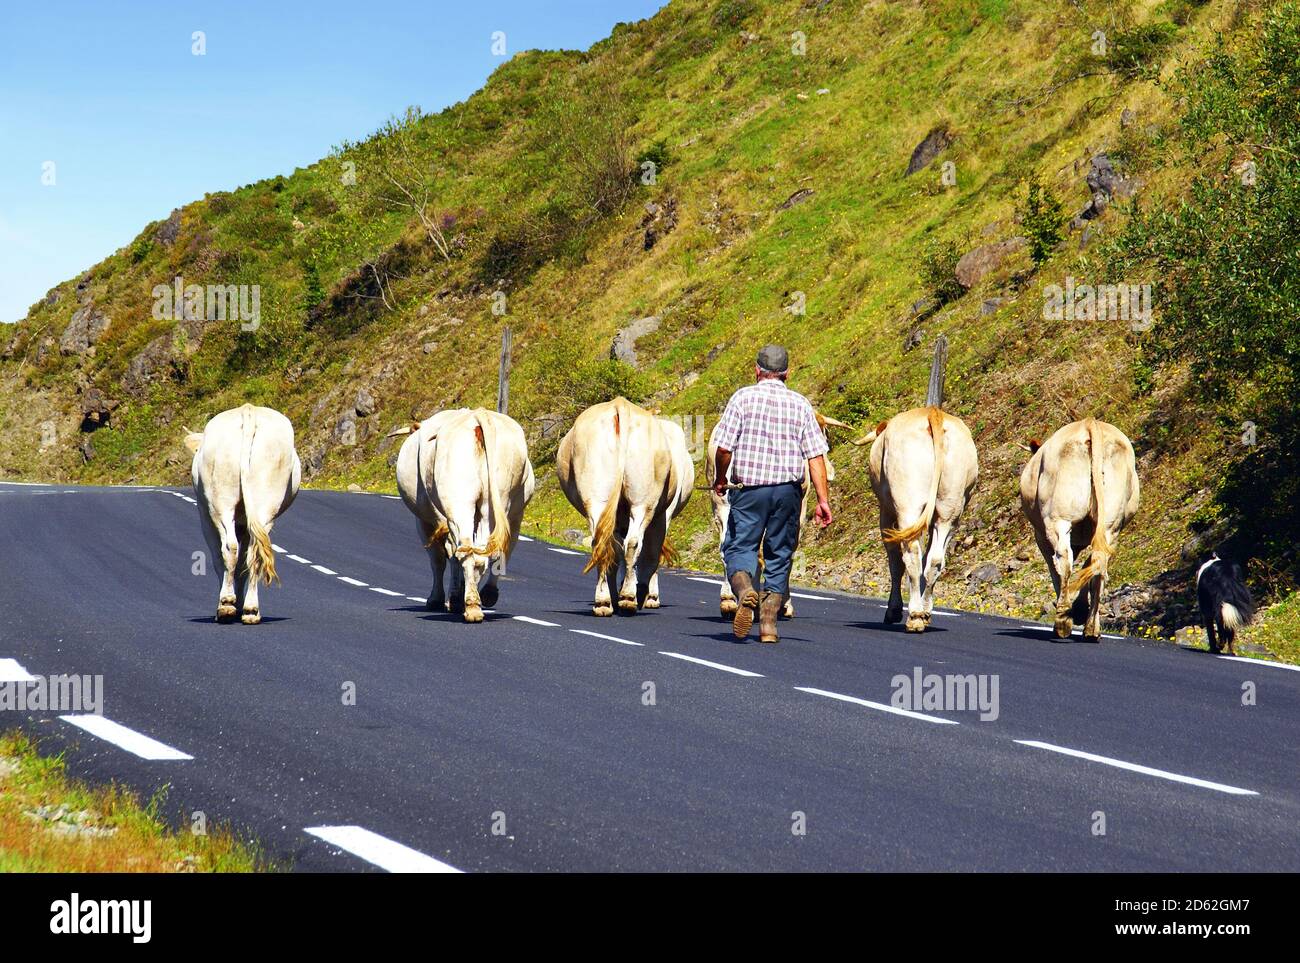 Rebaño de vacas tomando un camino para volver al granero. Foto de stock